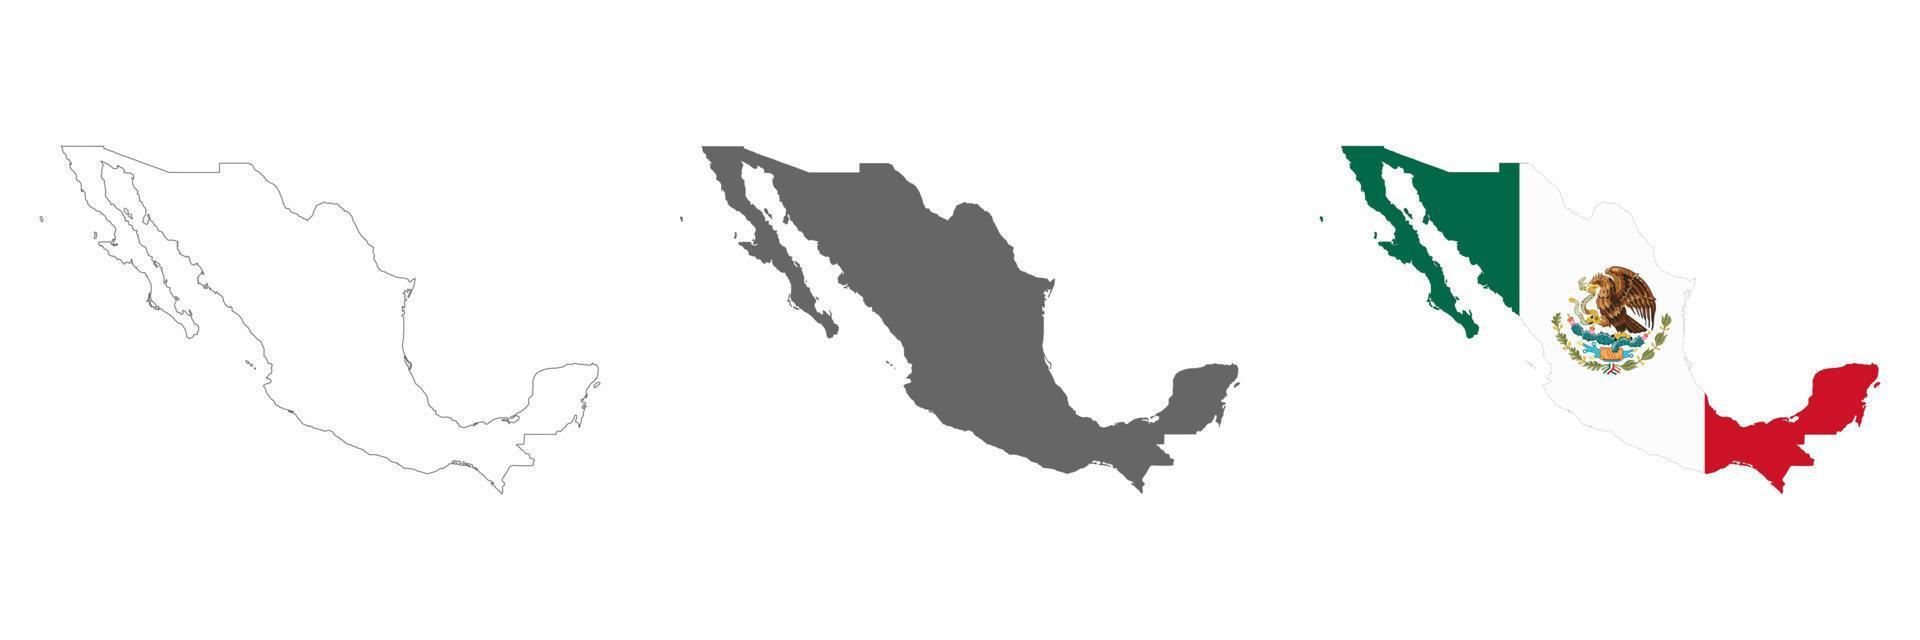 sehr detaillierte Mexiko-Karte mit auf dem Hintergrund isolierten Grenzen vektor